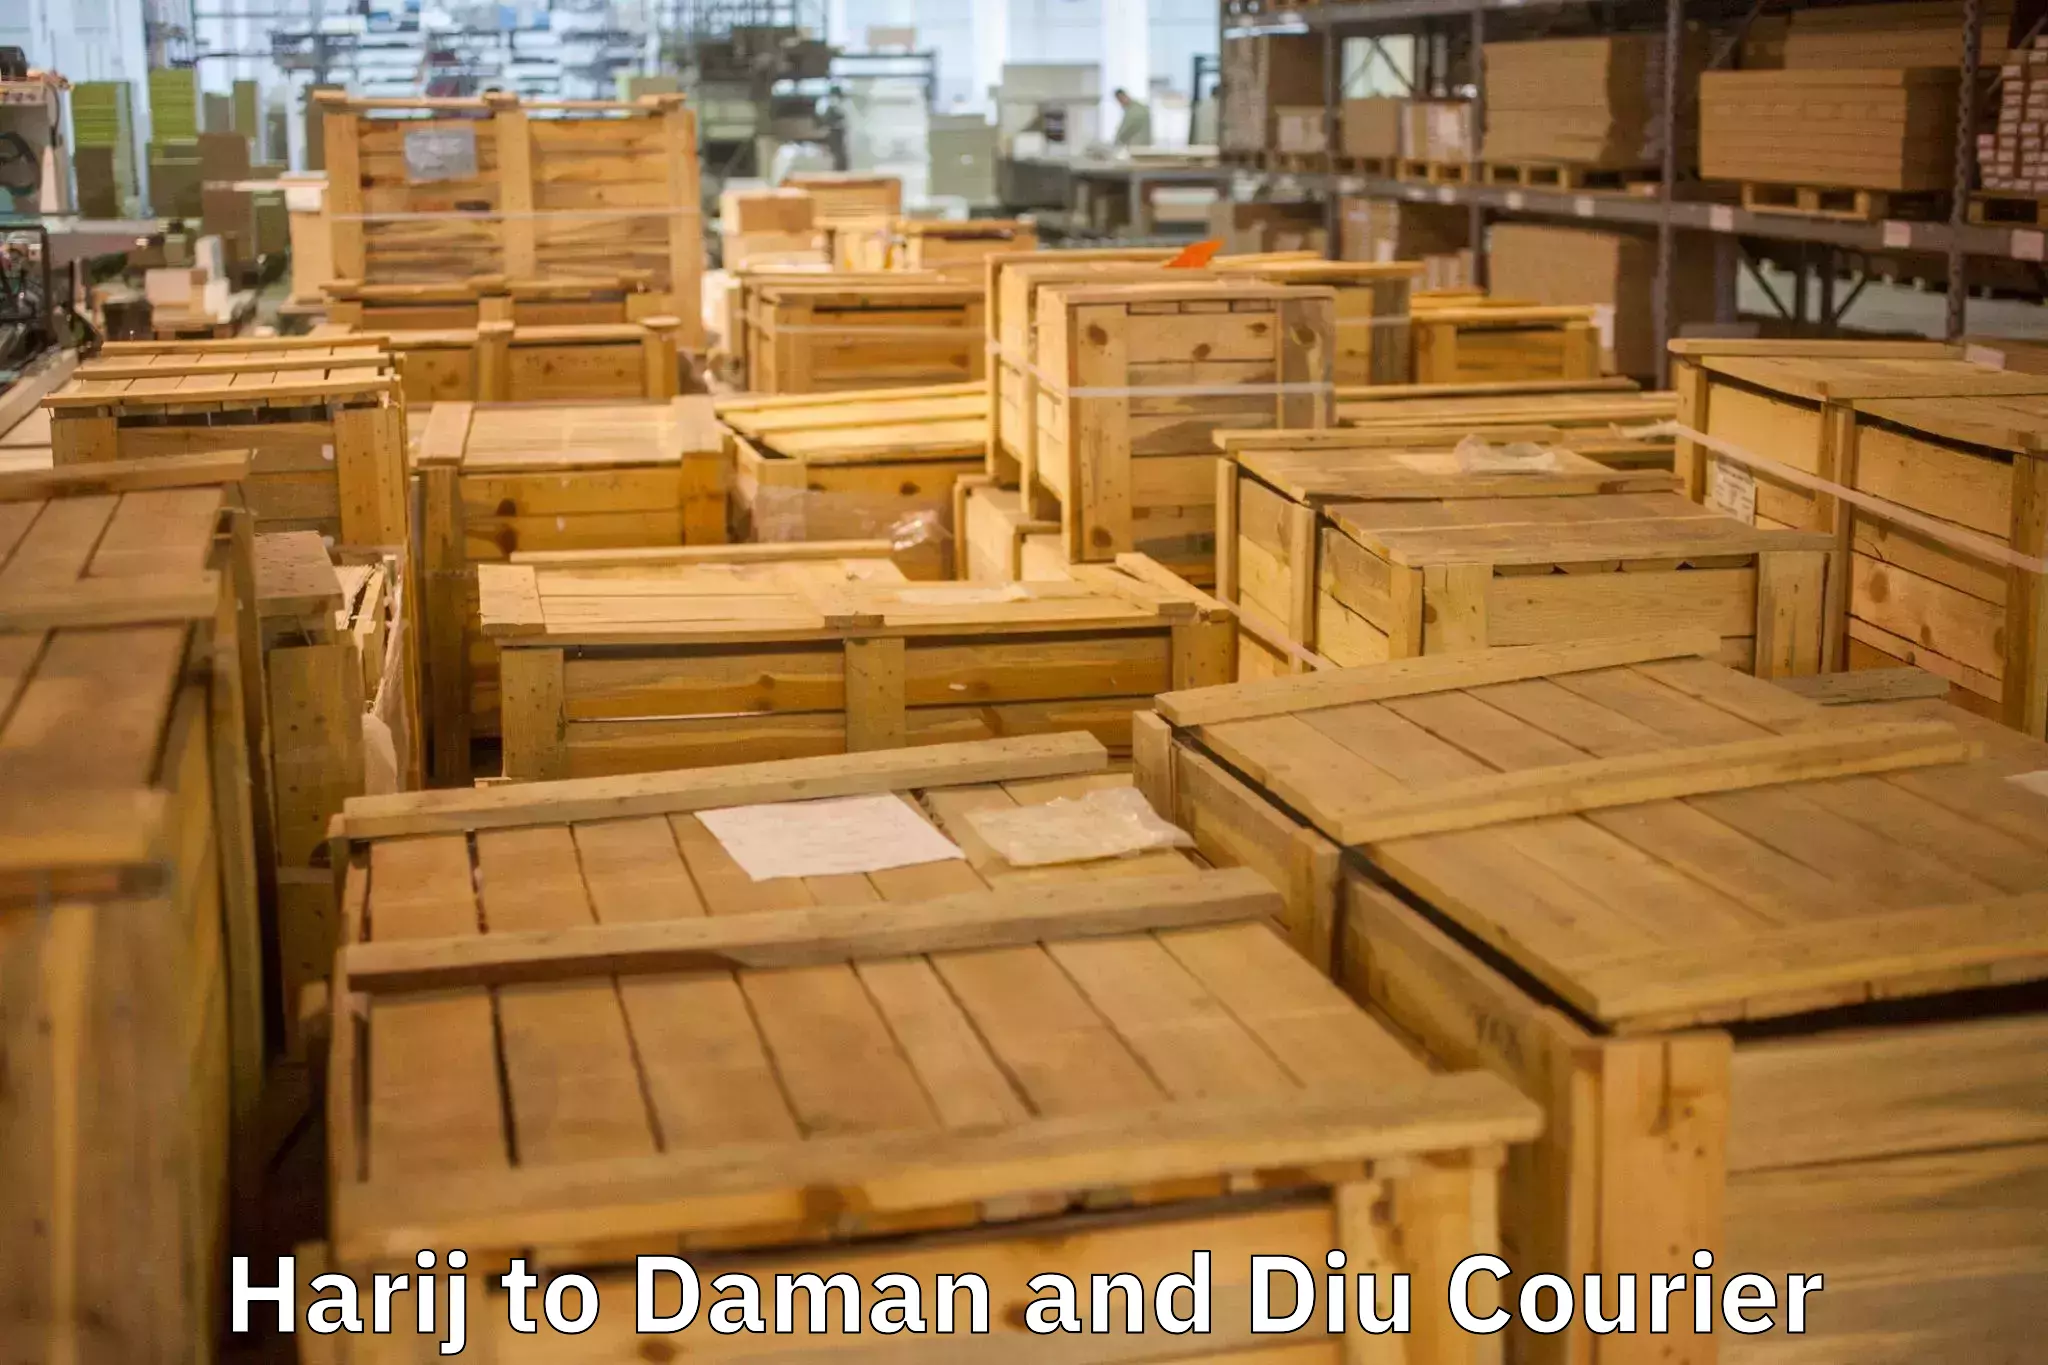 Custom moving plans Harij to Daman and Diu